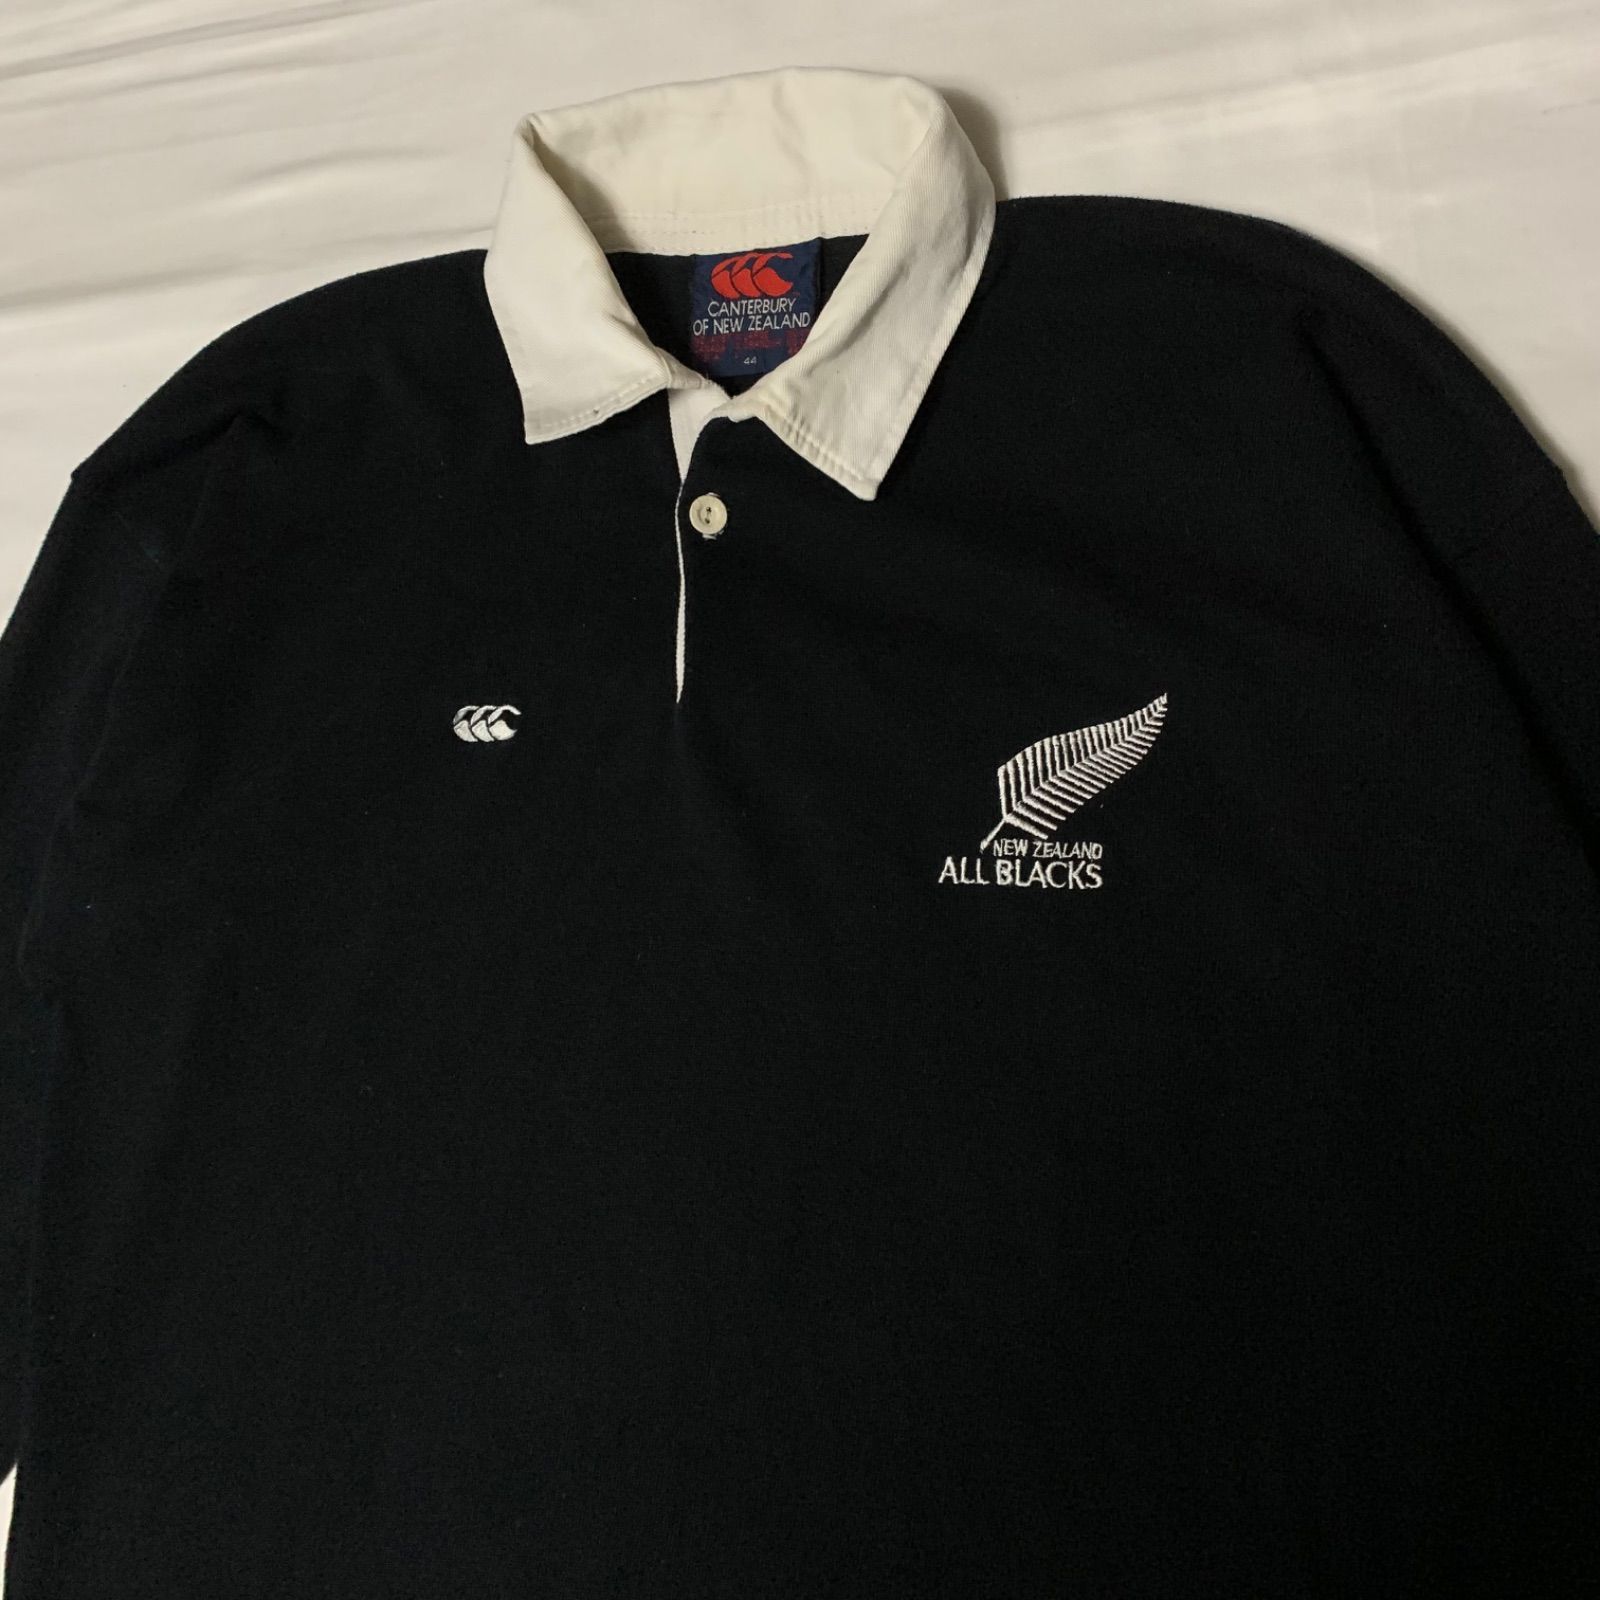 90-00s CANTERBURY “NZ ALL BLACKS” L/S Rugby Shirt カンターベリー ニュージーランド オールブラックス  ラガーシャツ 長袖 ブラック ホワイト ロゴ刺繍 ラバーボタン ラグビー ナショナルチーム